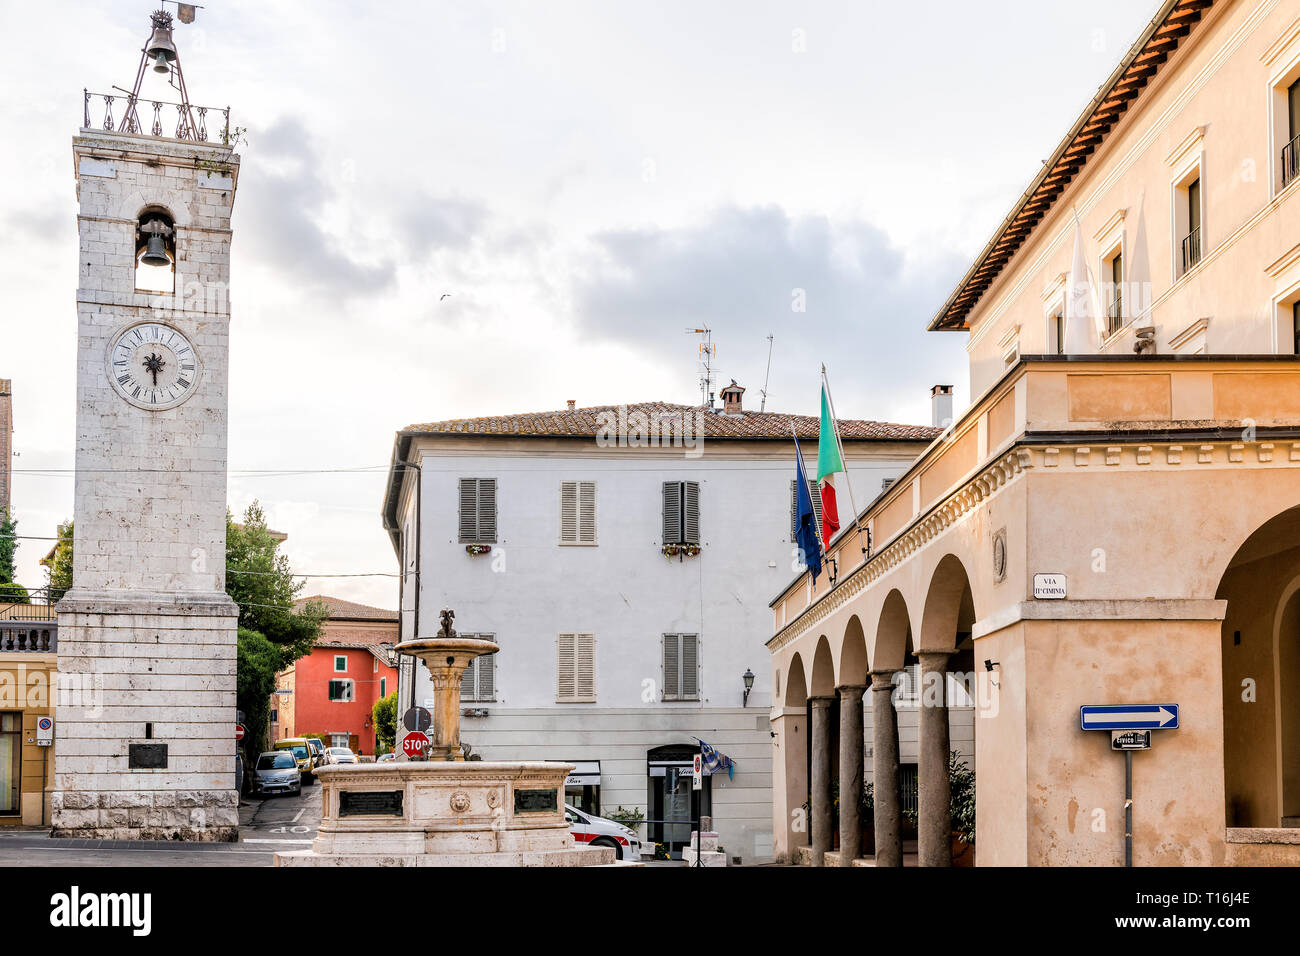 Chiusi, Italien - 25 August 2018: Straße in der kleinen Stadt Dorf in der Toskana bei Tag mit Rathaus Flaggen im Zentrum und historischen Brunnen Tower Stockfoto